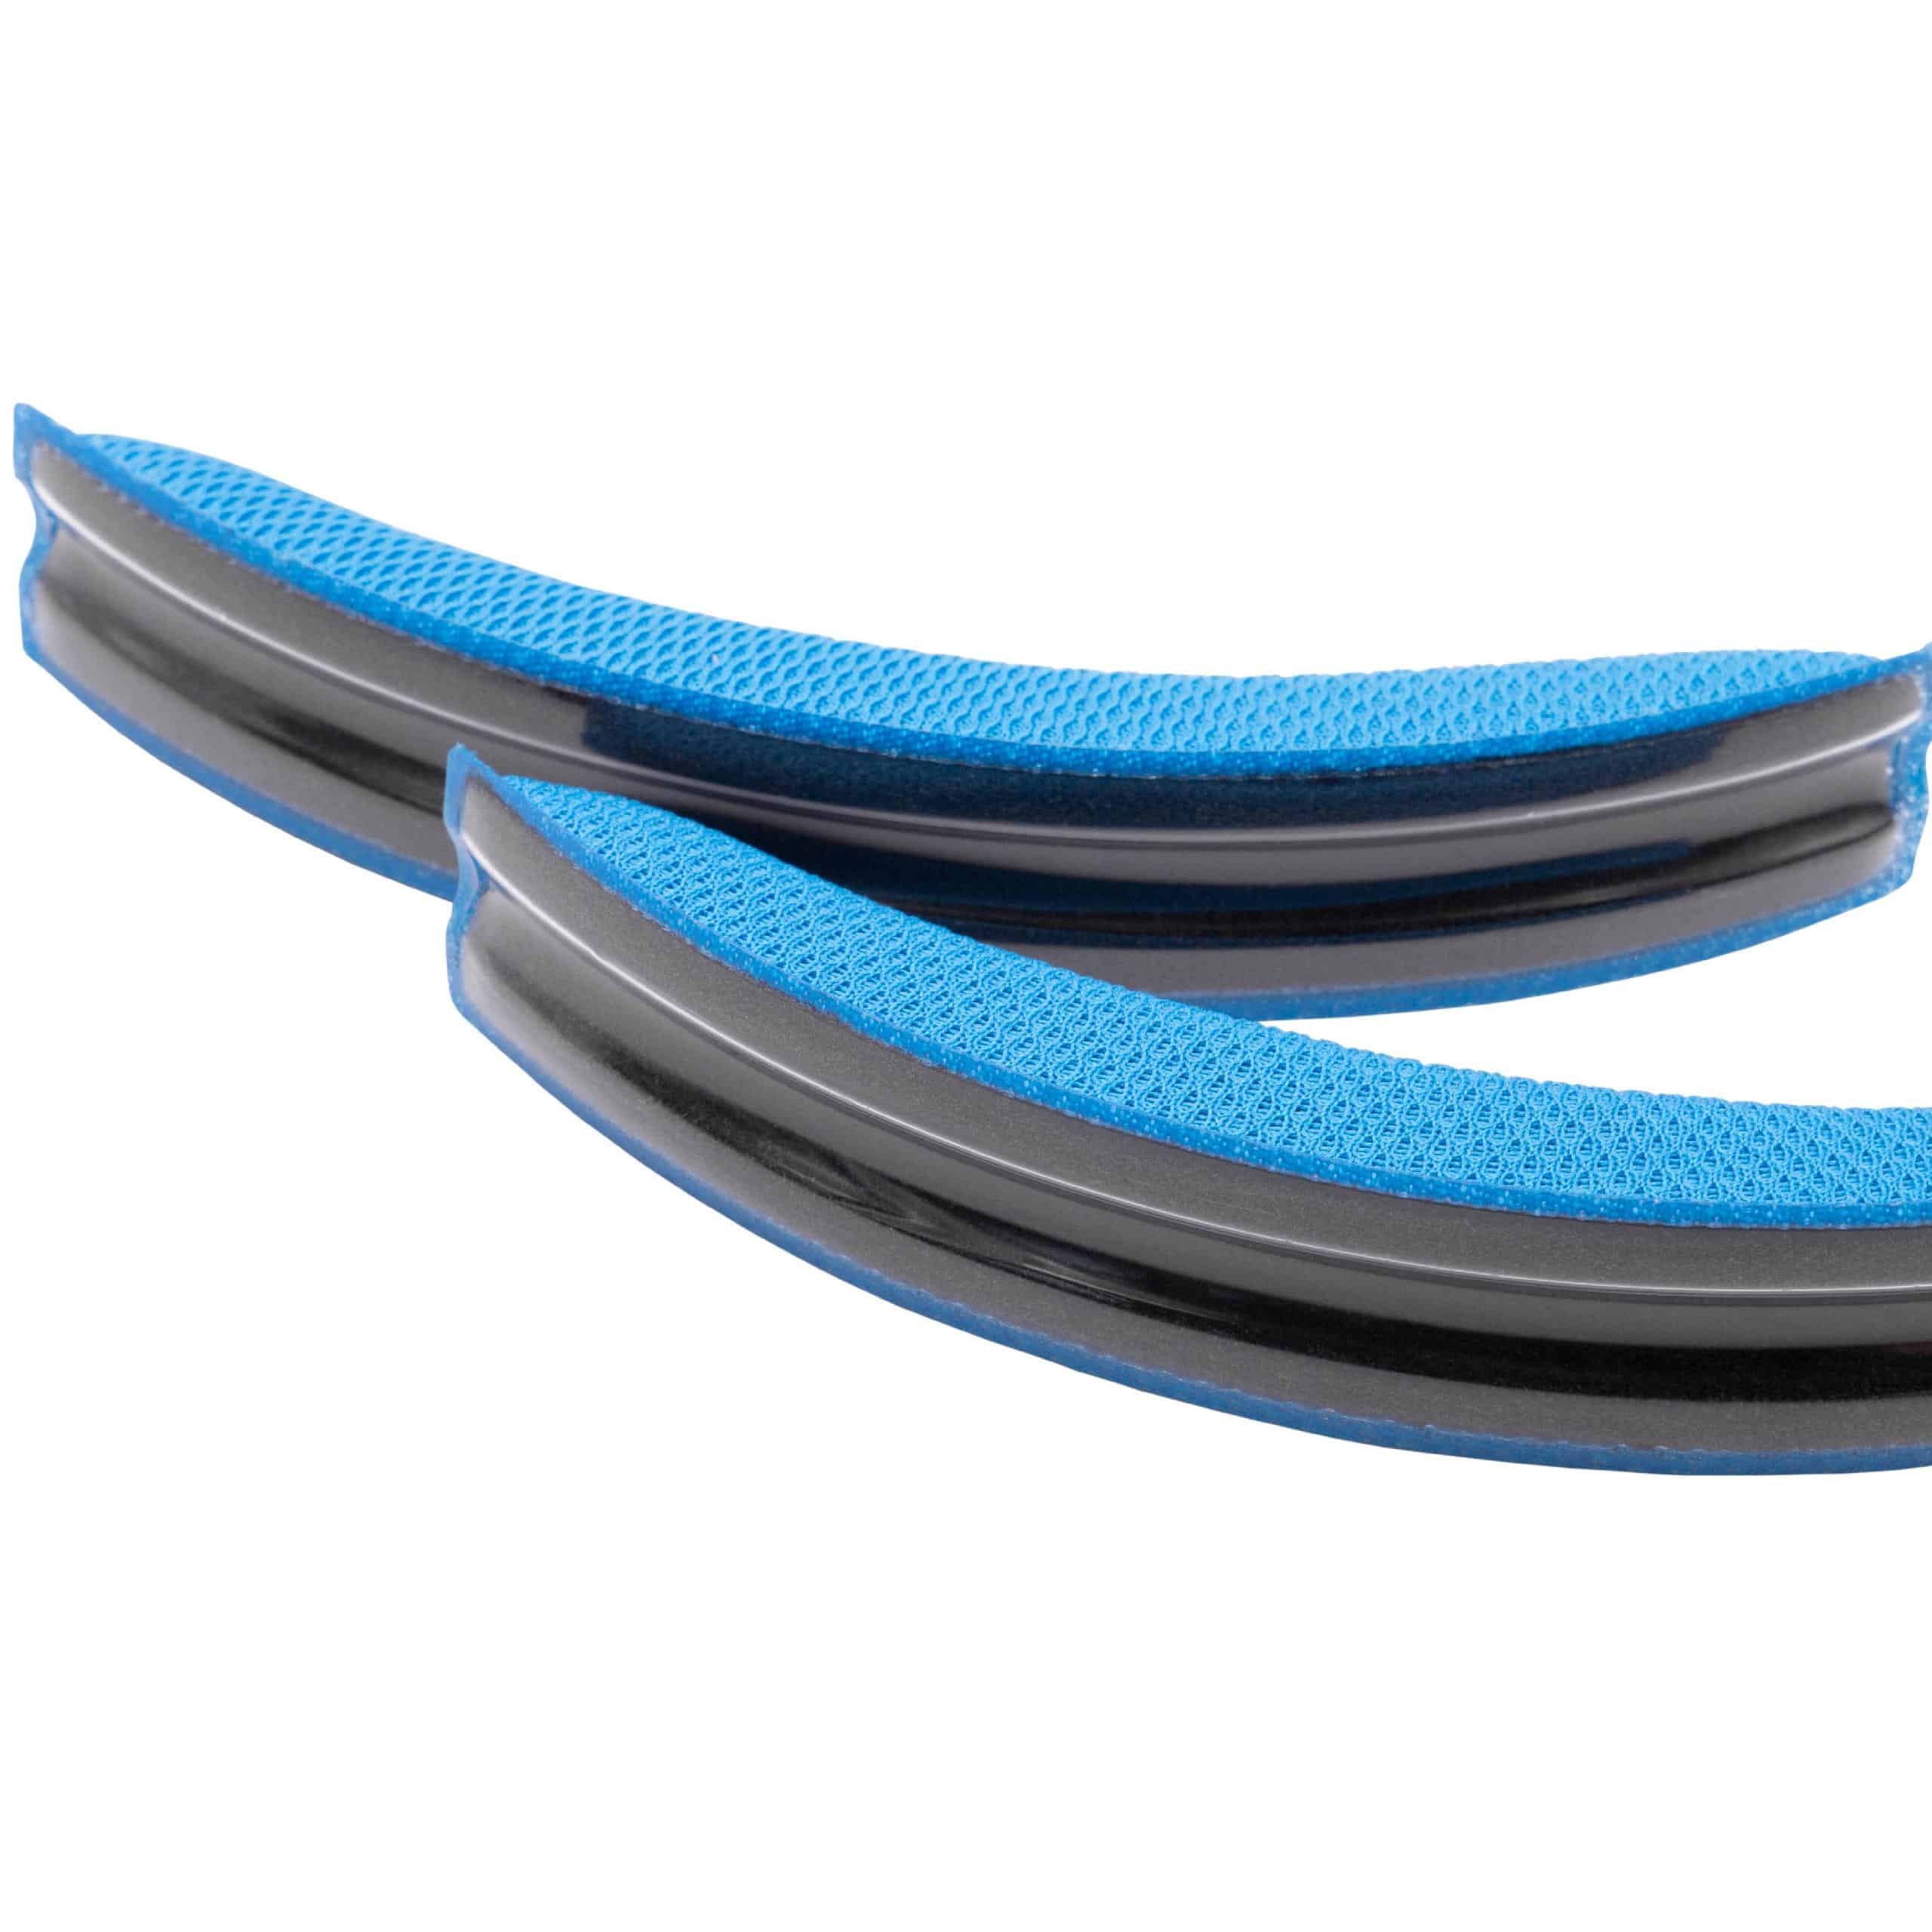 2x Ear Pads suitable for Logitech G930 Headphones etc. - foam, 15 mm thick